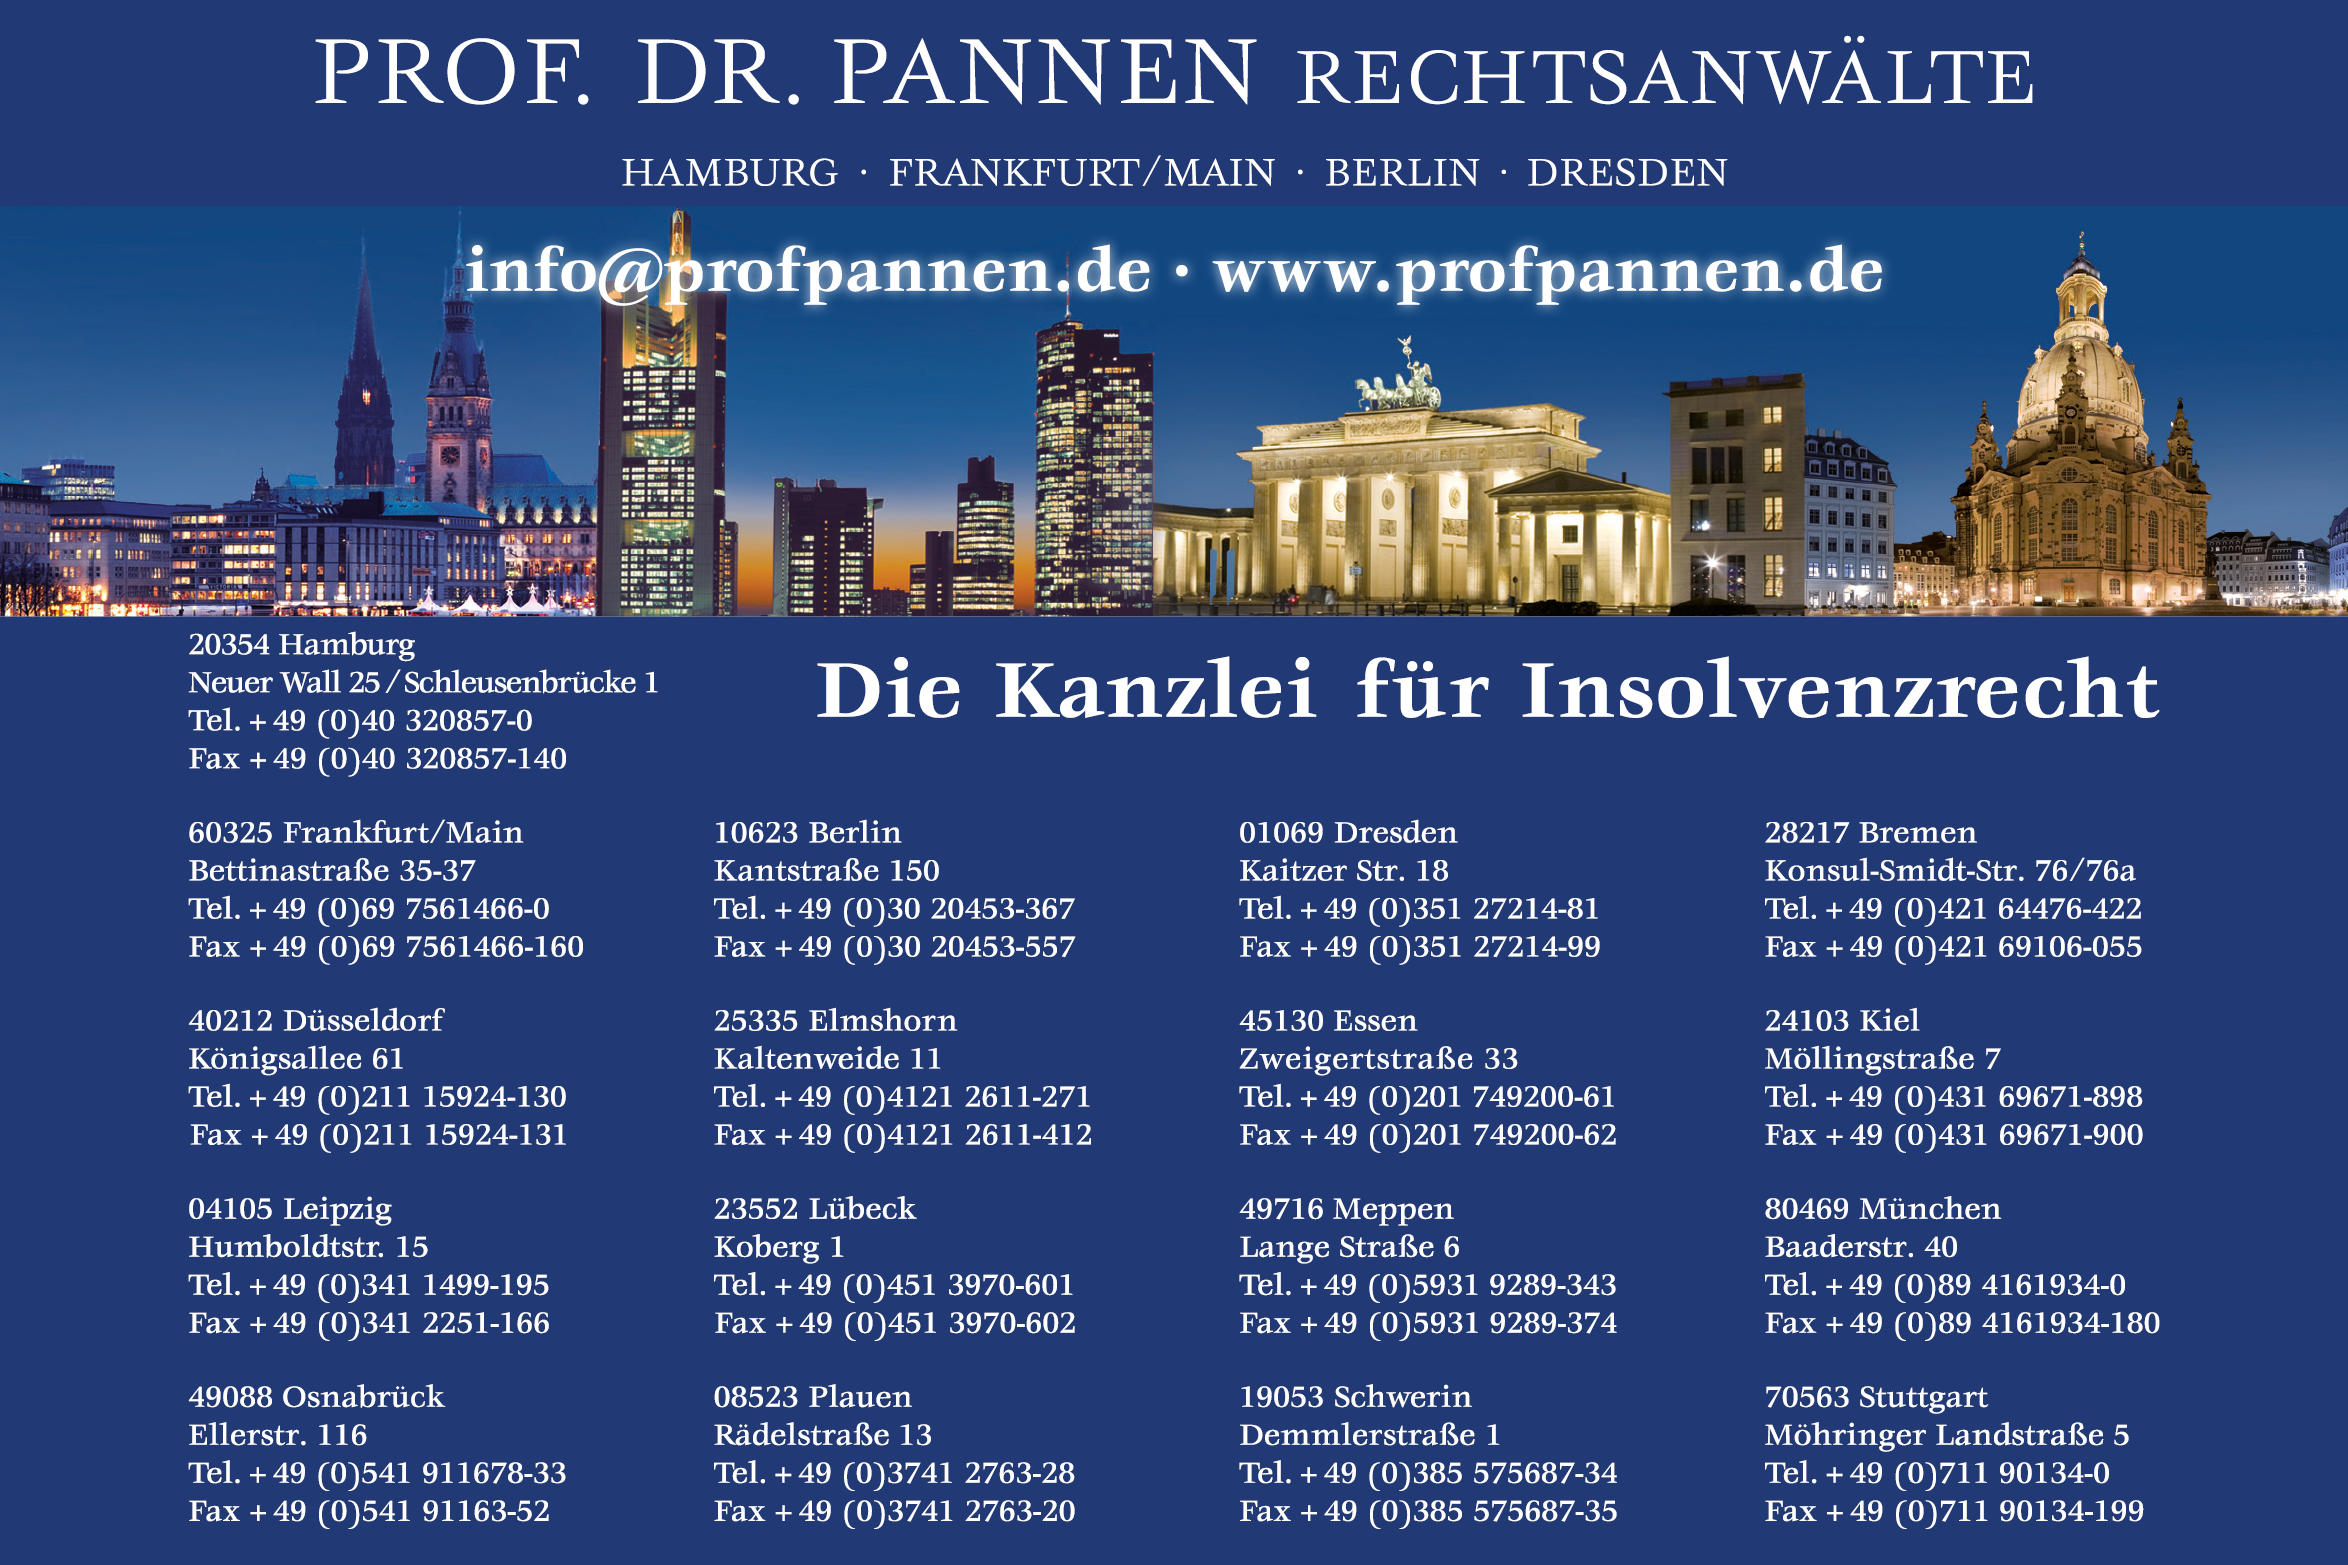 Prof. Dr. Pannen Rechtsanwälte, Hamburg, Frankfurt am Main, Berlin, Dresden, Übersicht Standorte